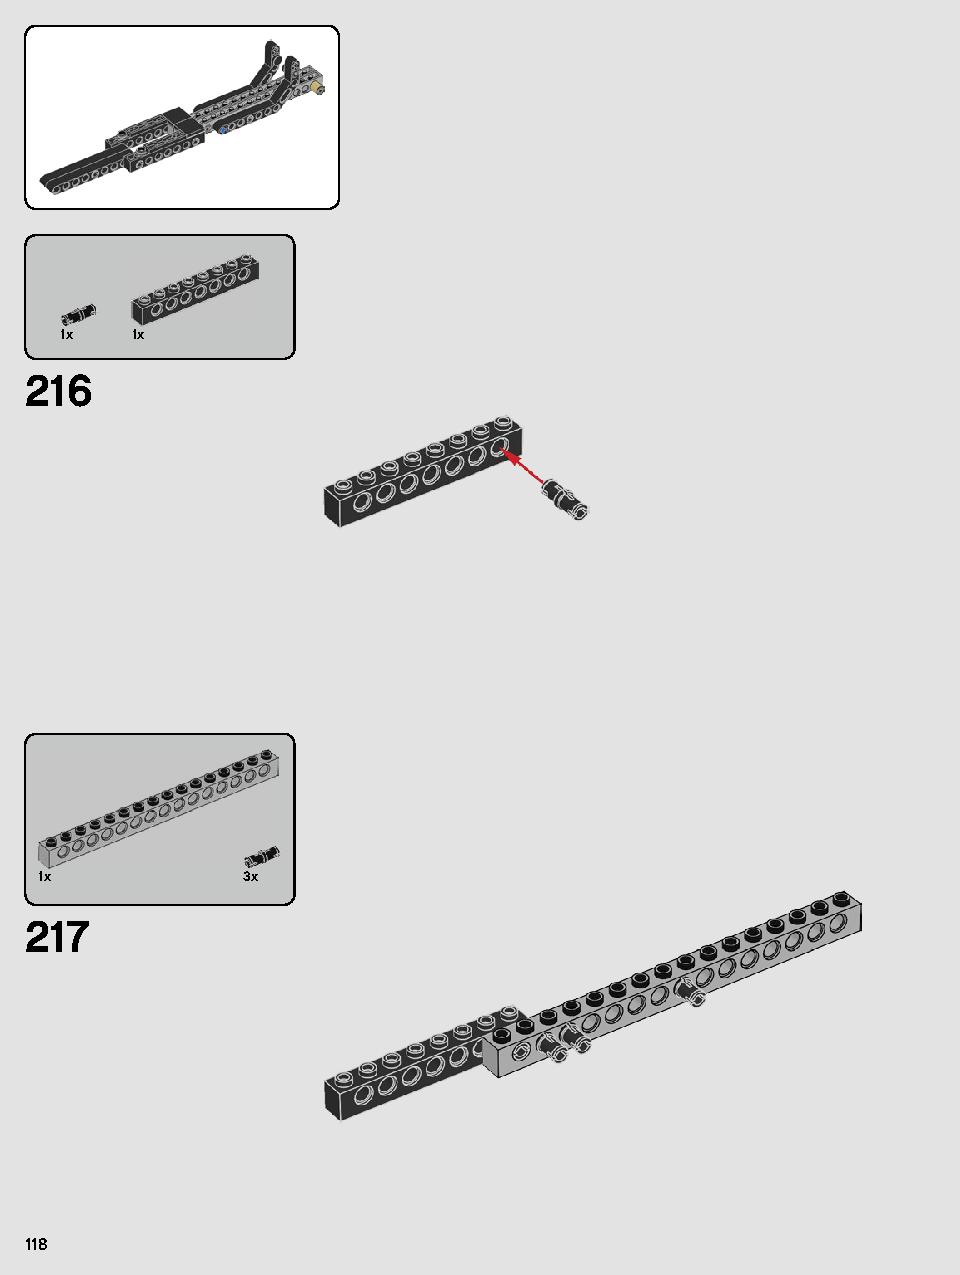 カイロ・レンのパーソナルシャトル™ 75256 レゴの商品情報 レゴの説明書・組立方法 118 page